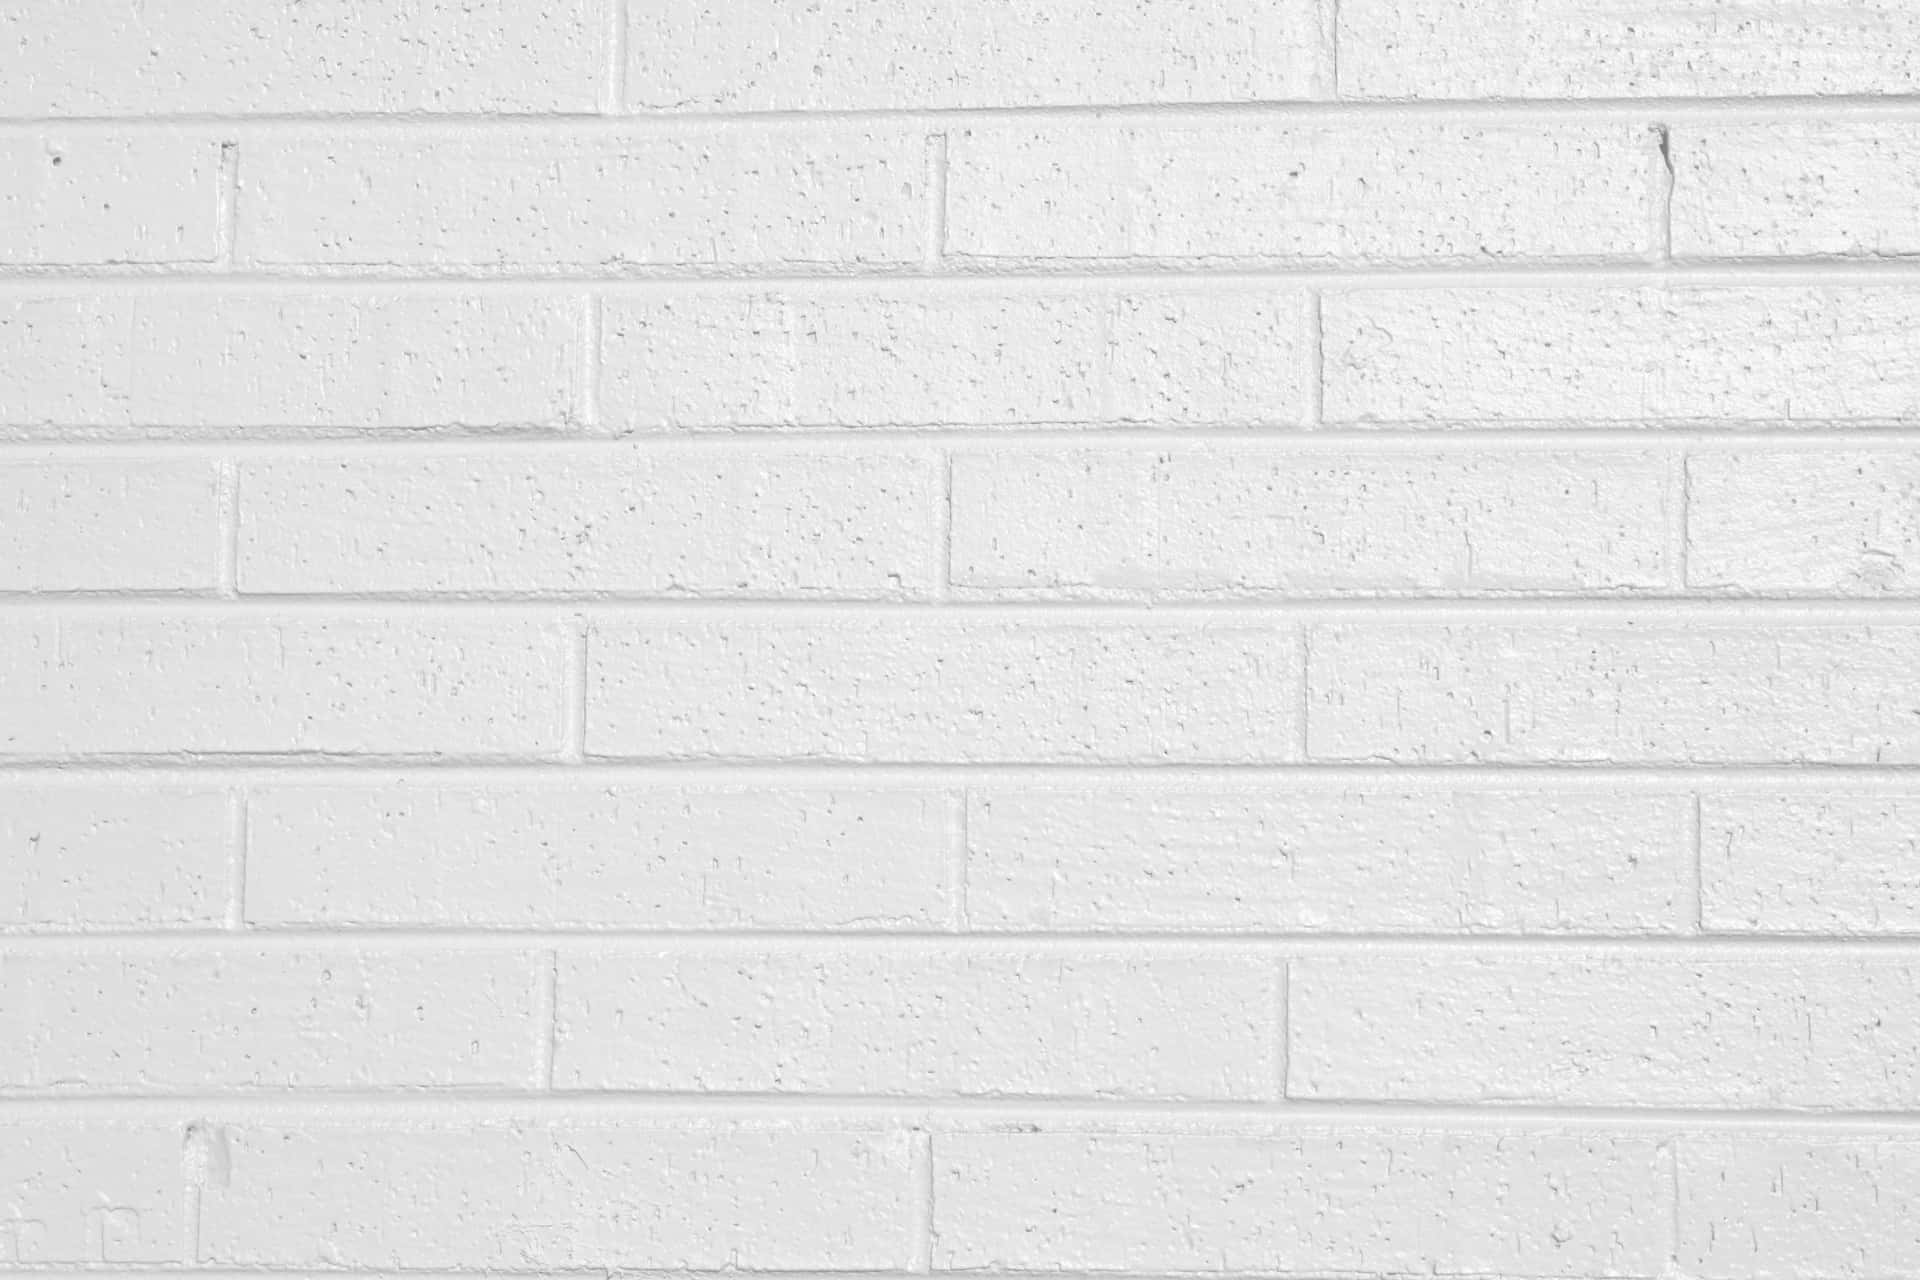 white brick texture seamless